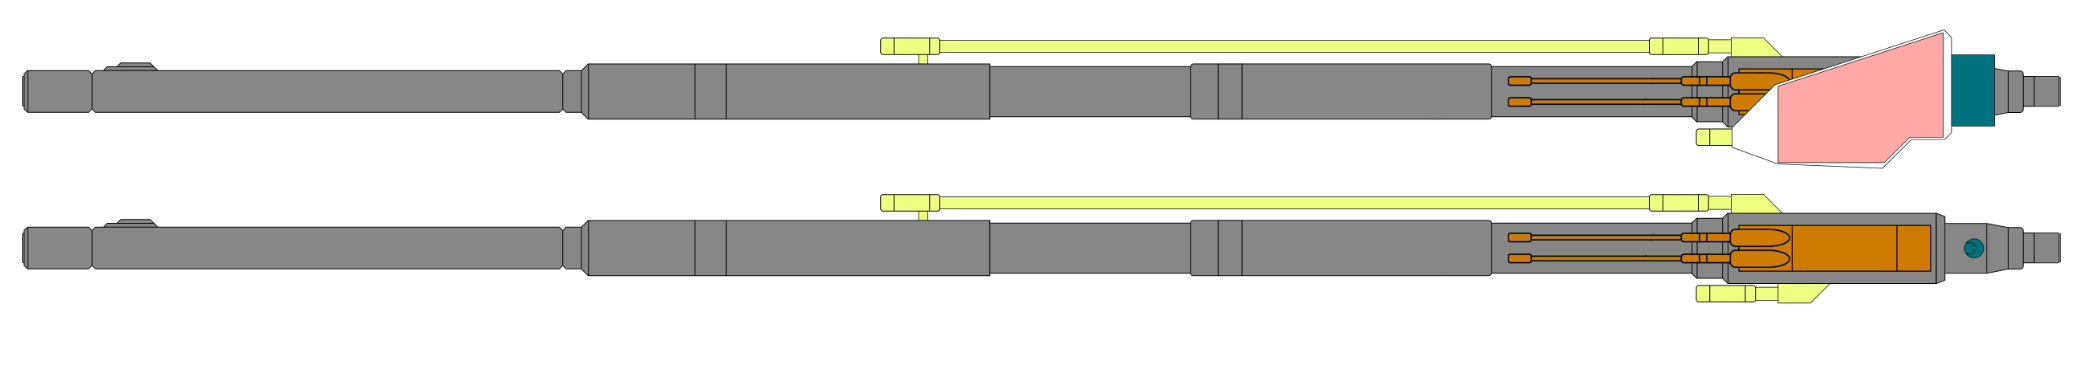 190mm磁力加速-粒子束动能两用炮，炮管后部为粒子存储舱，上方带炮盾，黄绿色为冷却液输送管，深绿色为炮管耳轴与高低机